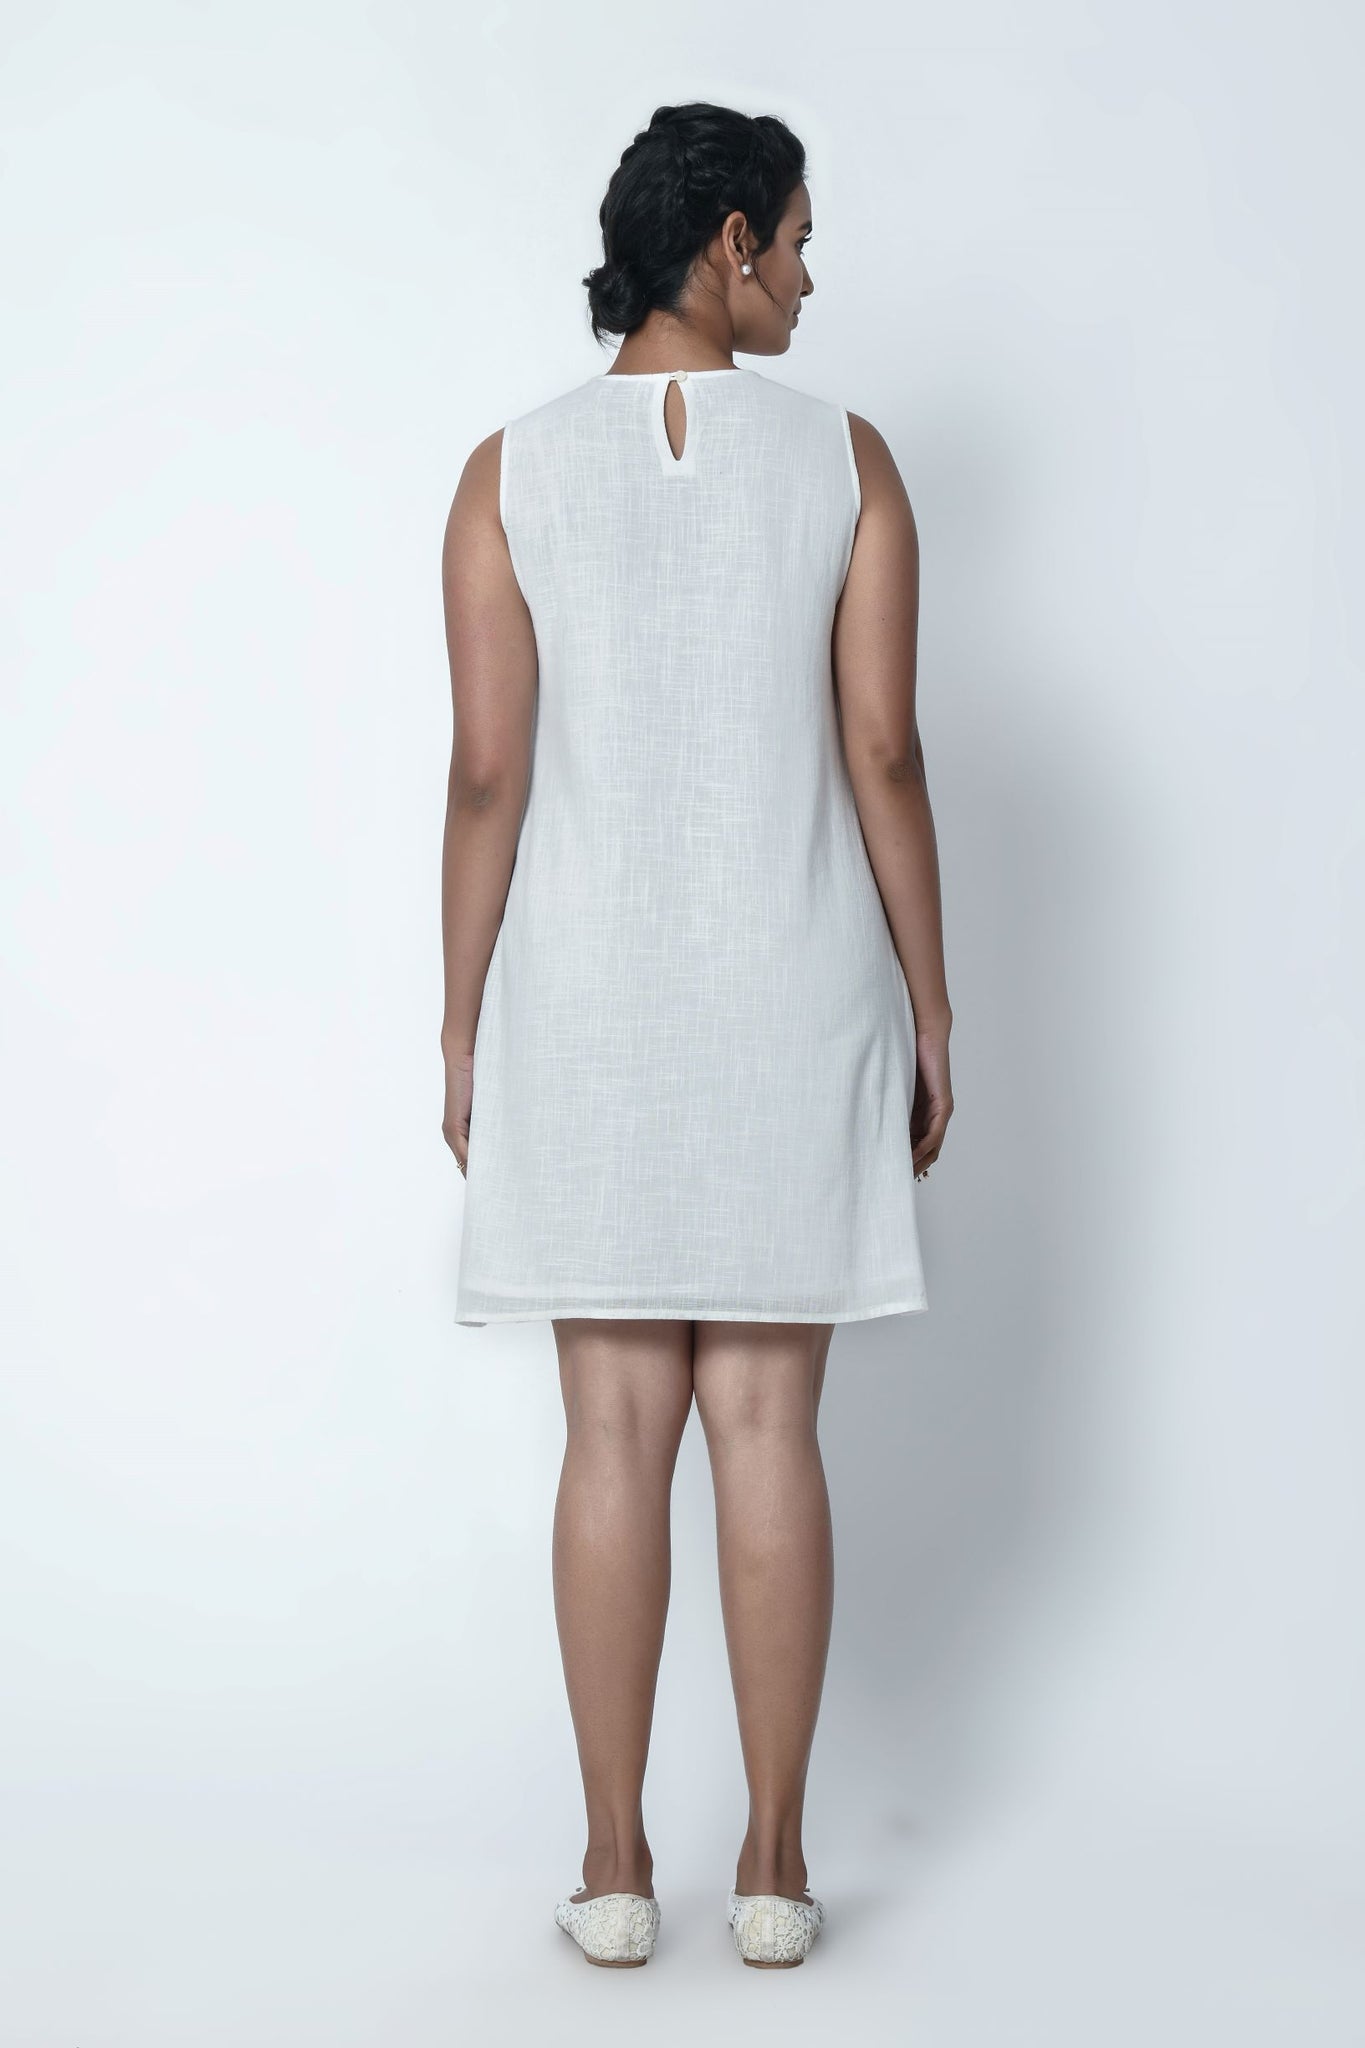 Phagun Ivory White Sleeveless Dress With Chikankari Embroidery